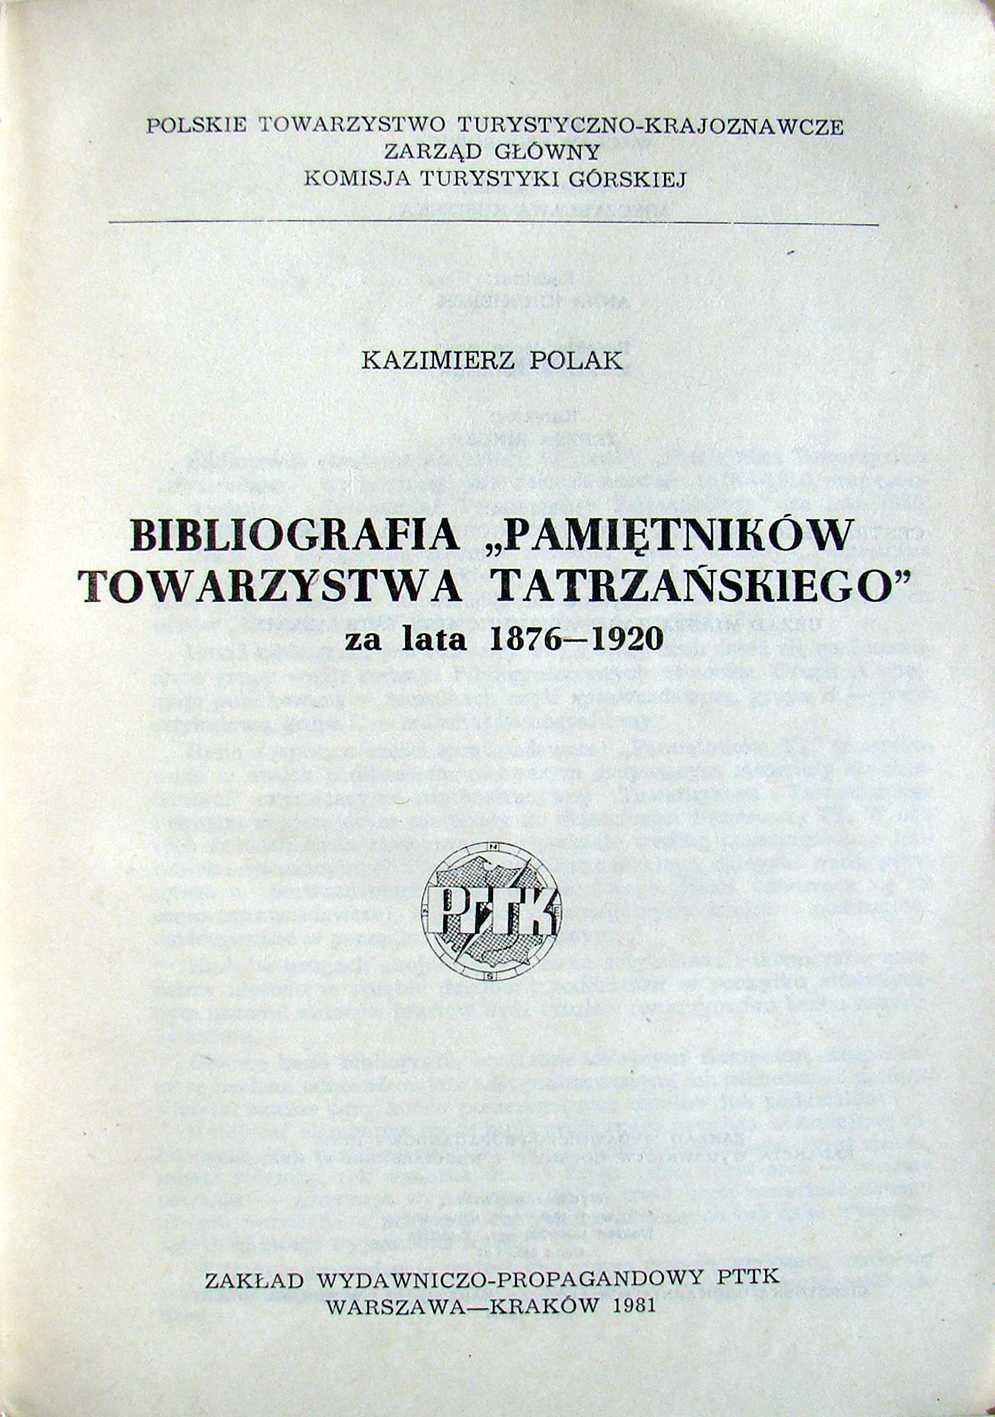 Bibliografia "Pamiętników Towarzystwa Tatrzańskiego" za lata 1886